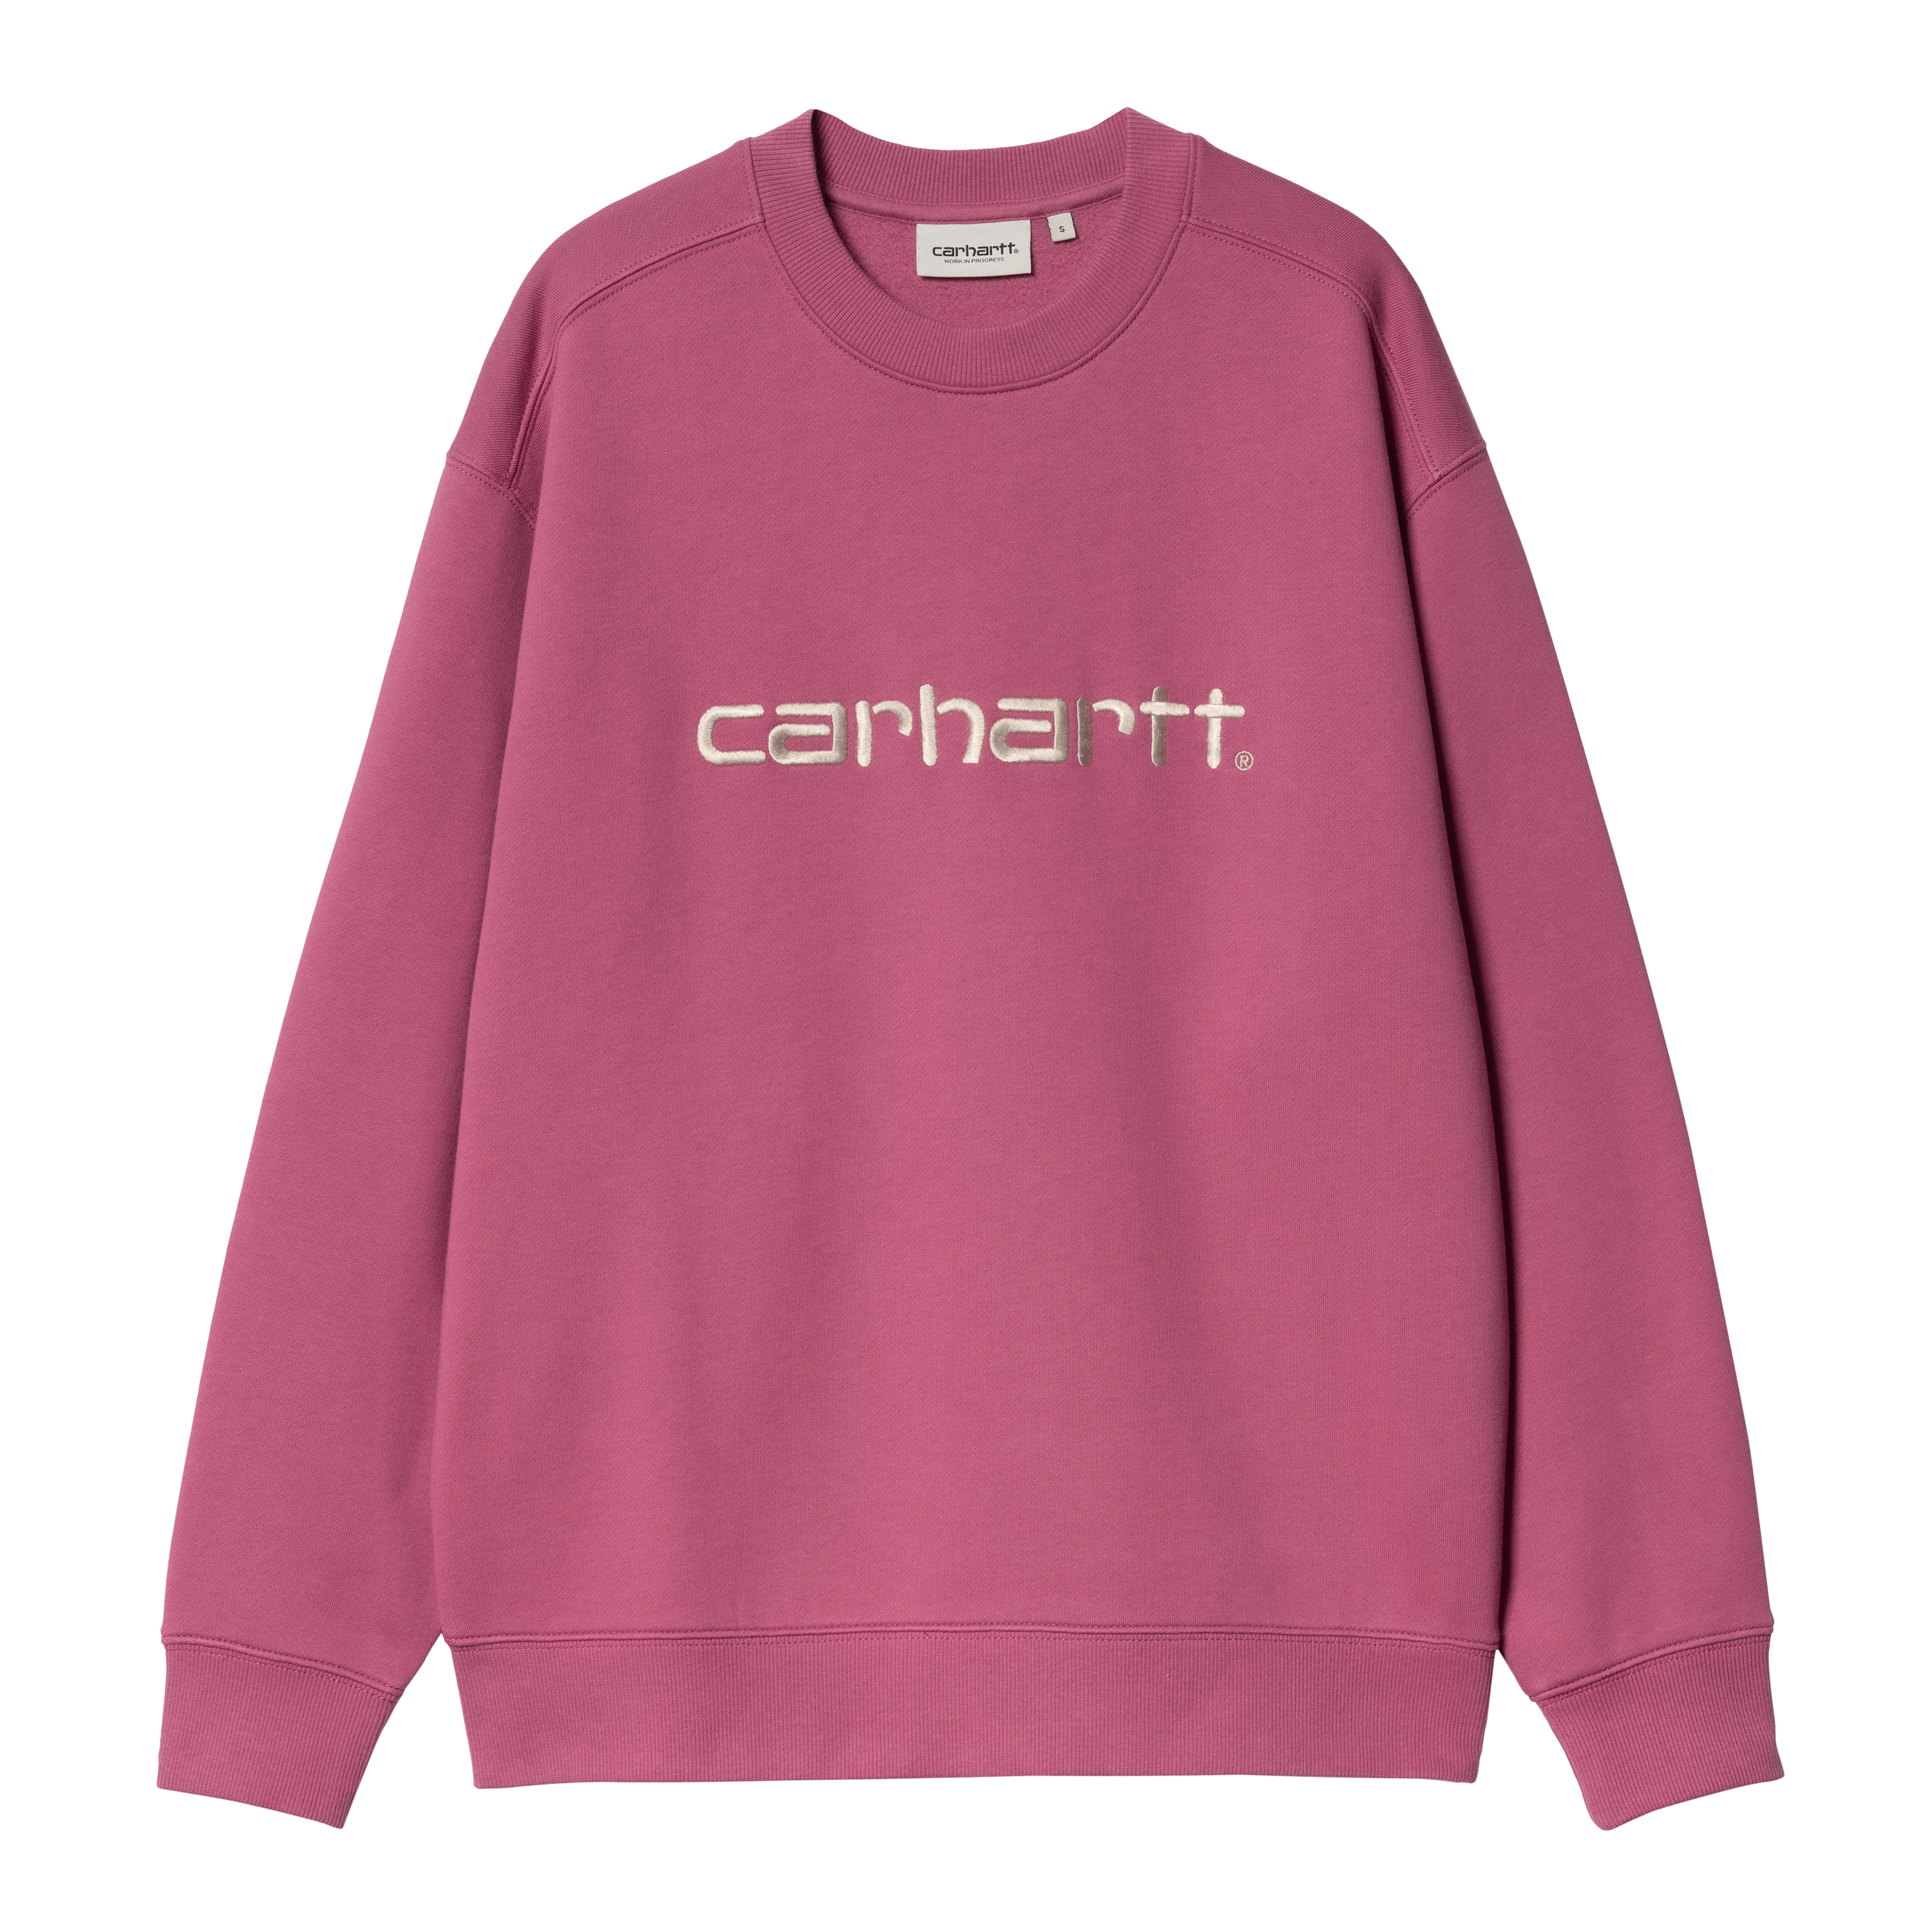 Carhartt WIP Women’s Carhartt Sweat in Pink